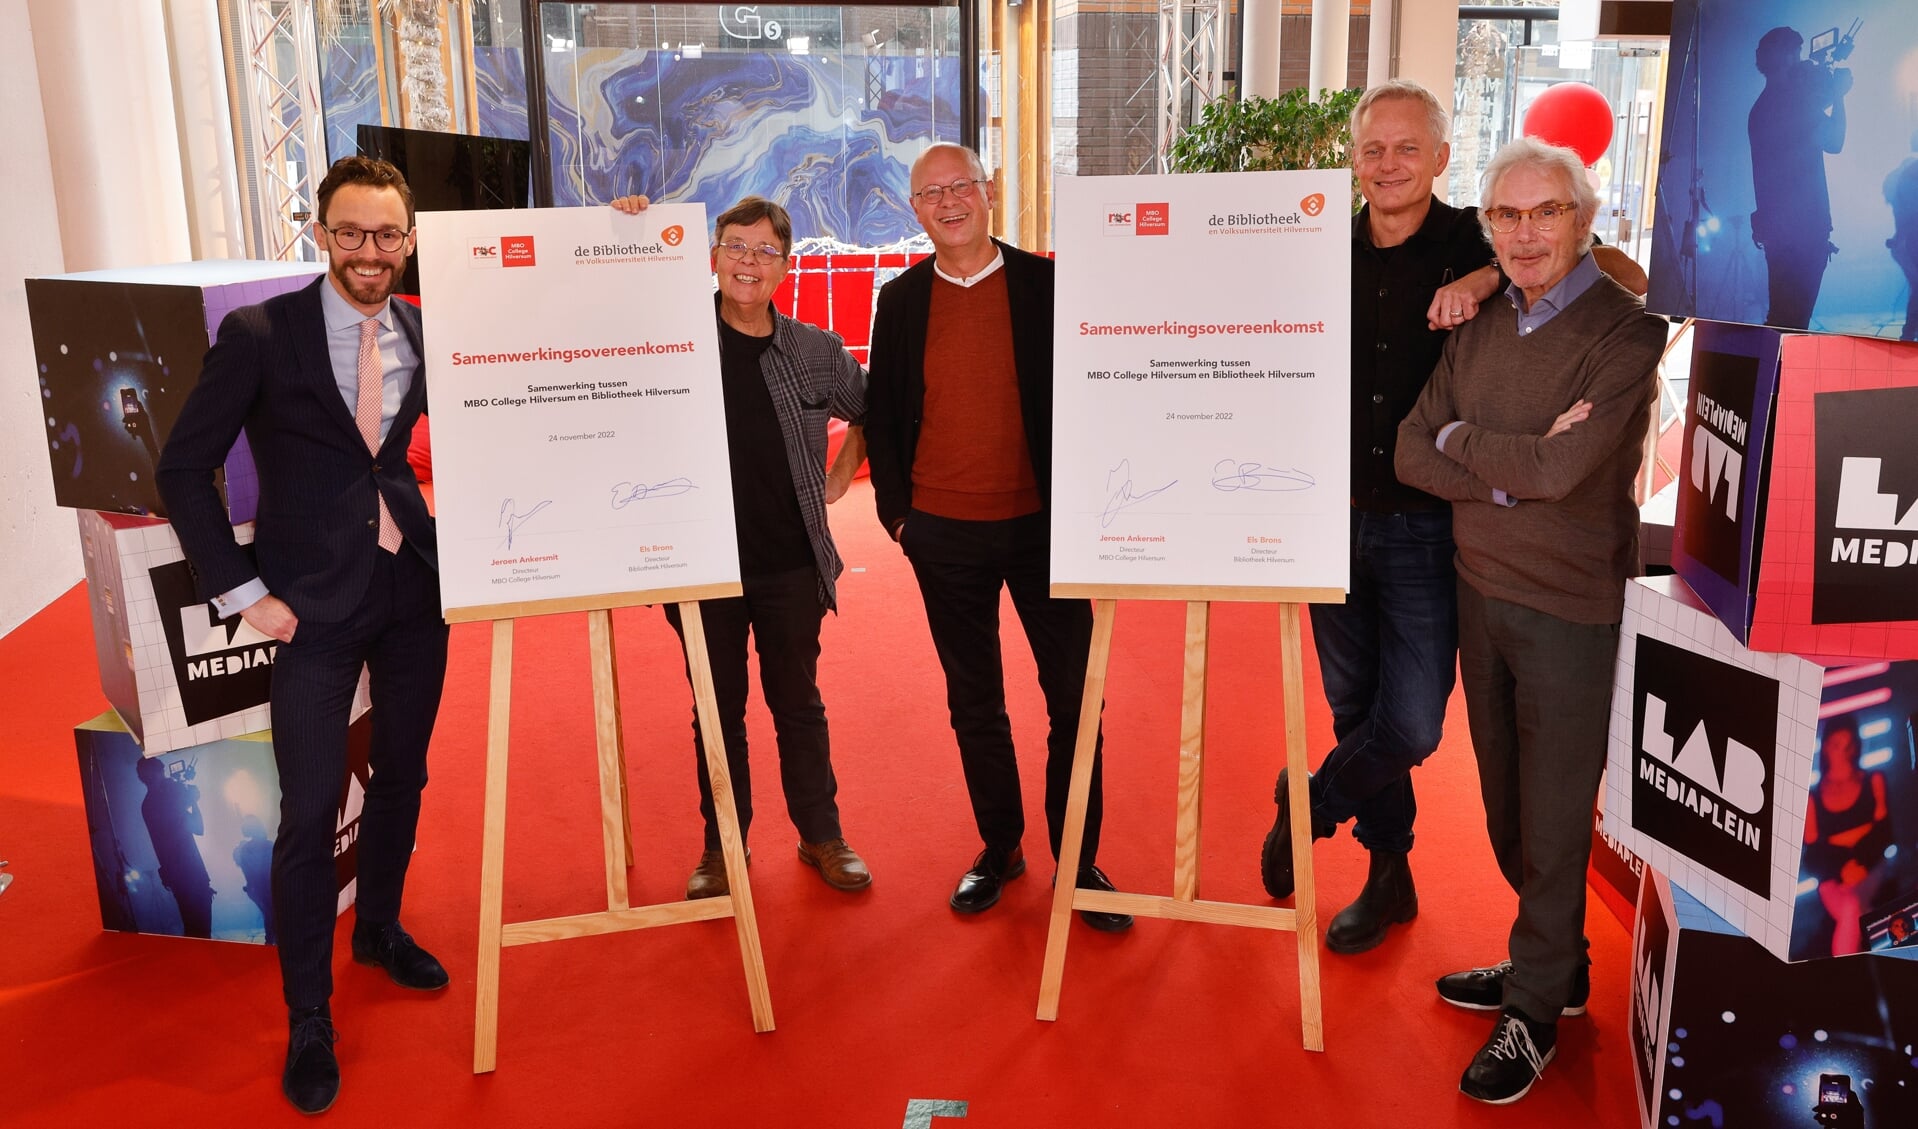 De ondertekening met van links naar rechts: wethouder Arno Scheepers (cultuur), directeur Els Brons van Bibliotheek Hilversum, directeur Jeroen Ankersmit van het MBO College, John Leek van Beeld en Geluid en directeur Stef van Breugel van Museum Hilversum. 